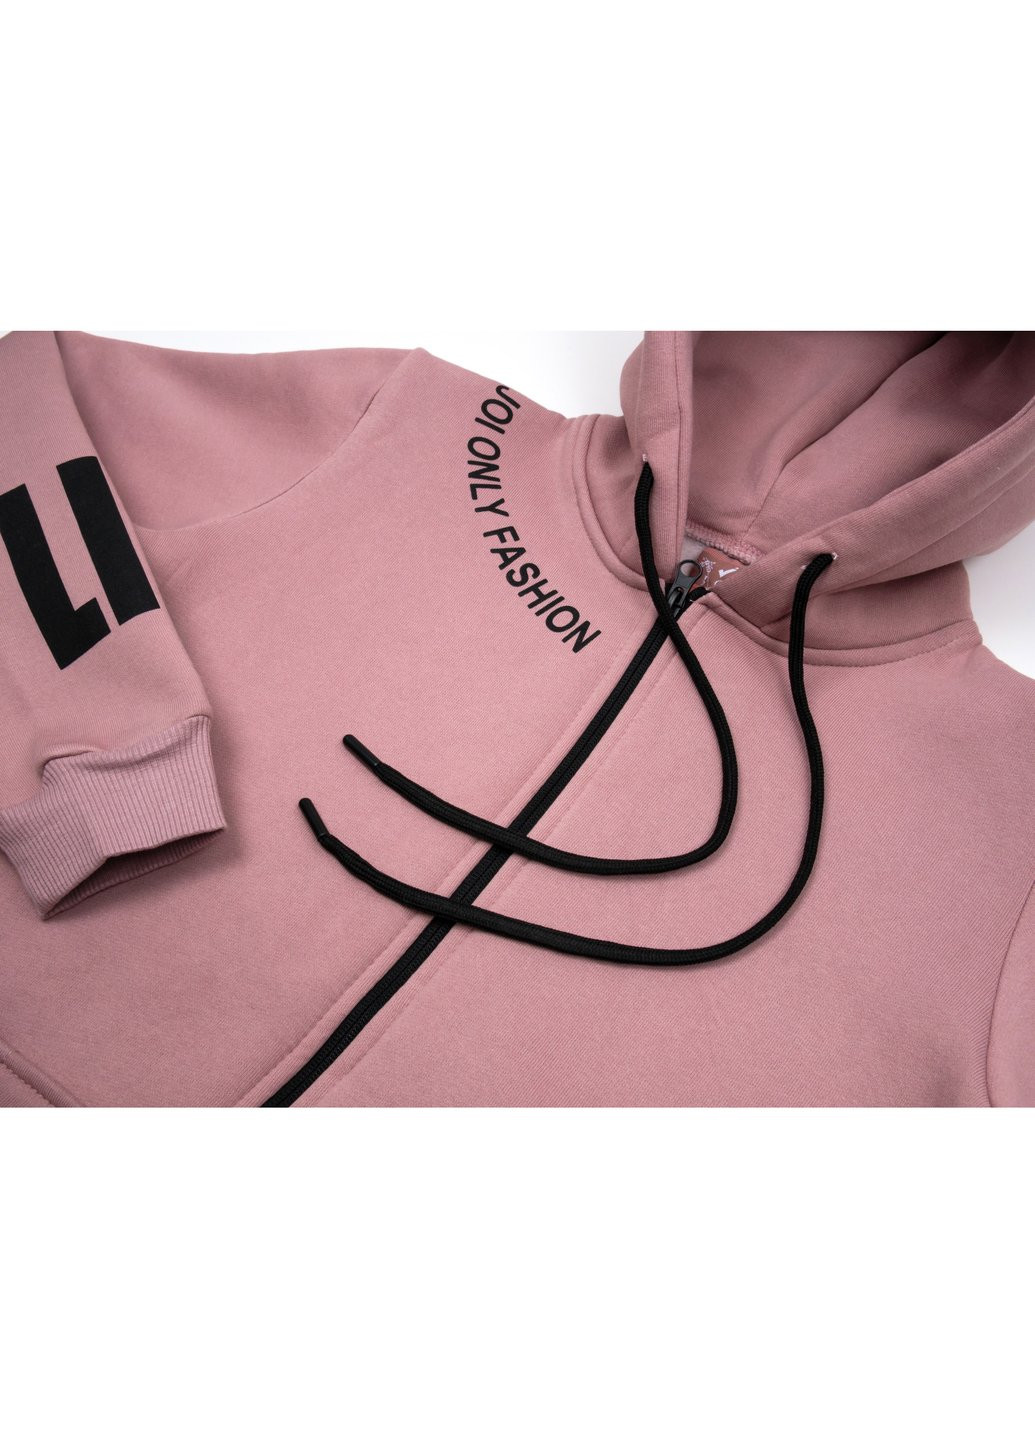 Спортивный костюм флисовый (H-208-152G-pink) Joi (257207511)